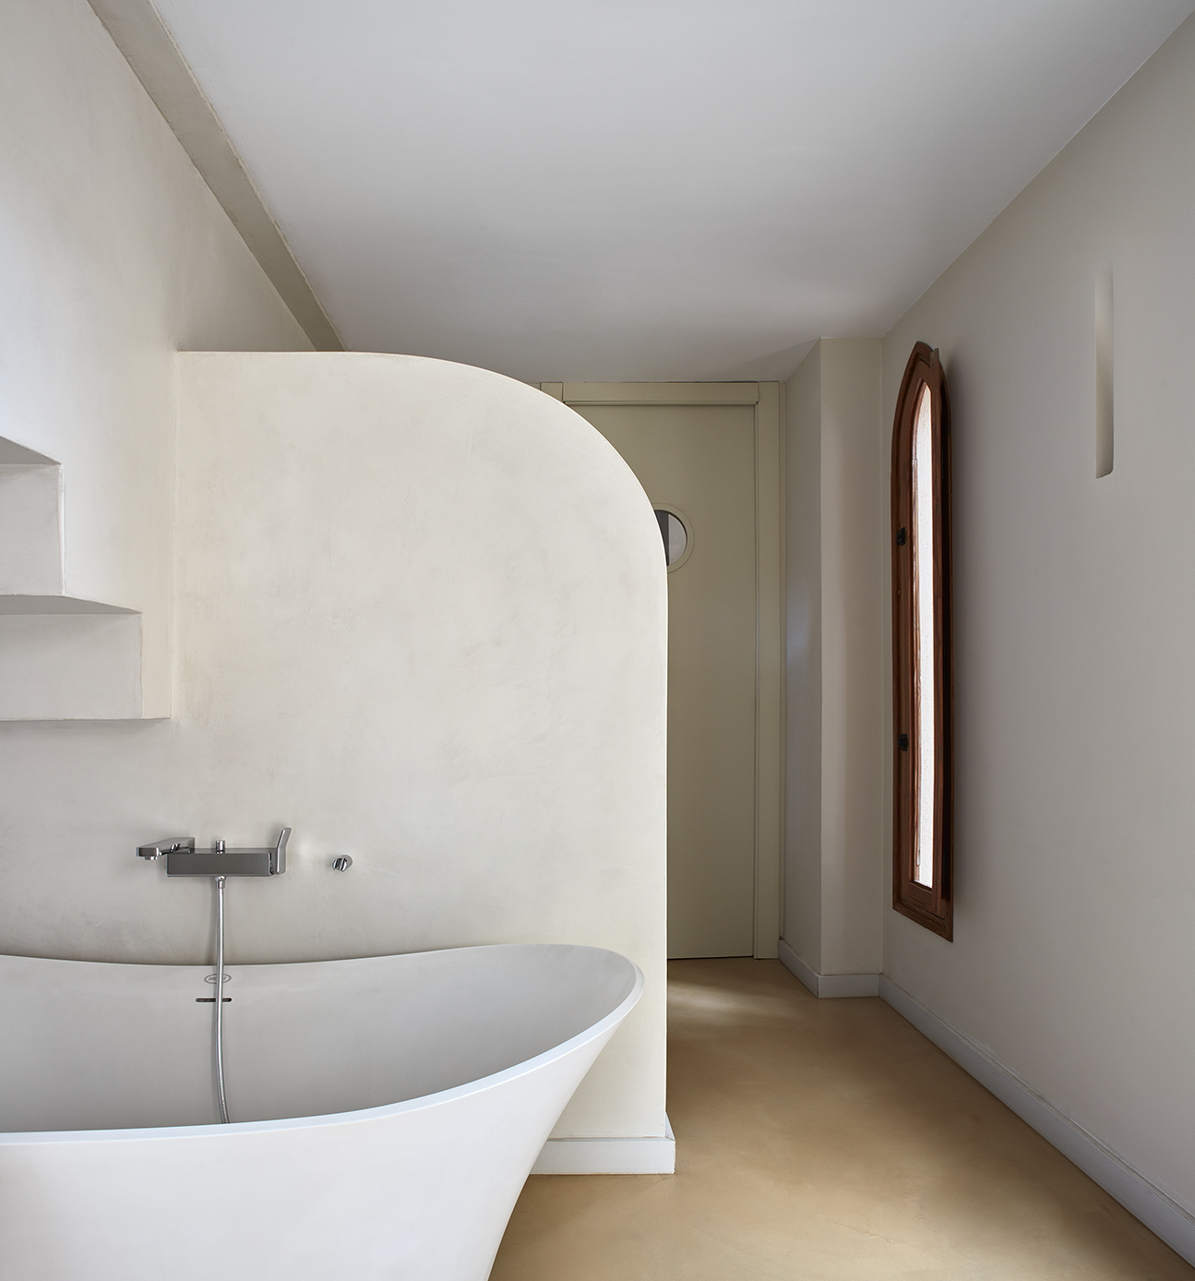 Baño de microcemento en paredes y suelo Casa Isabel